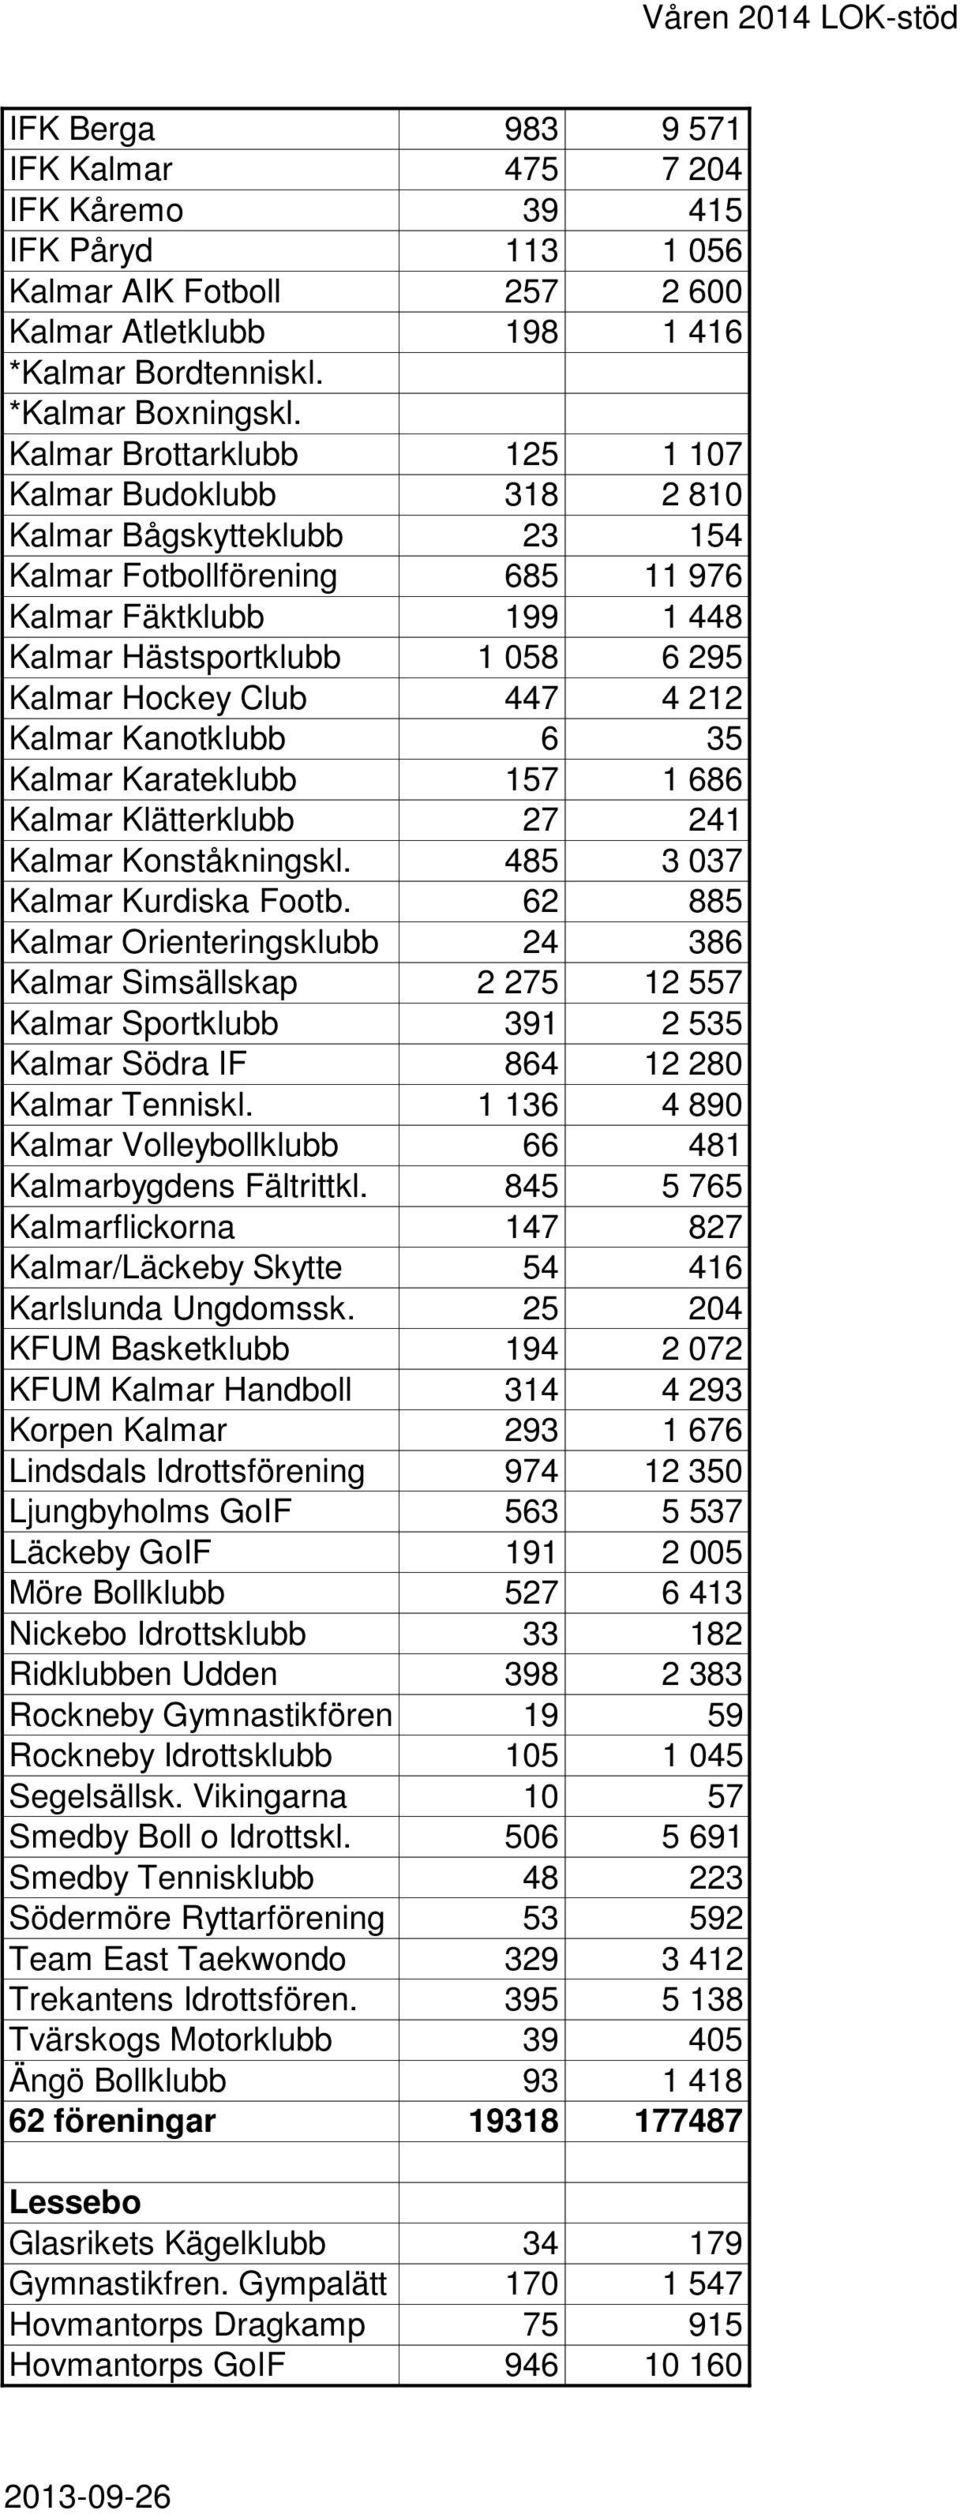 447 4 212 Kalmar Kanotklubb 6 35 Kalmar Karateklubb 157 1 686 Kalmar Klätterklubb 27 241 Kalmar Konståkningskl. 485 3 037 Kalmar Kurdiska Footb.